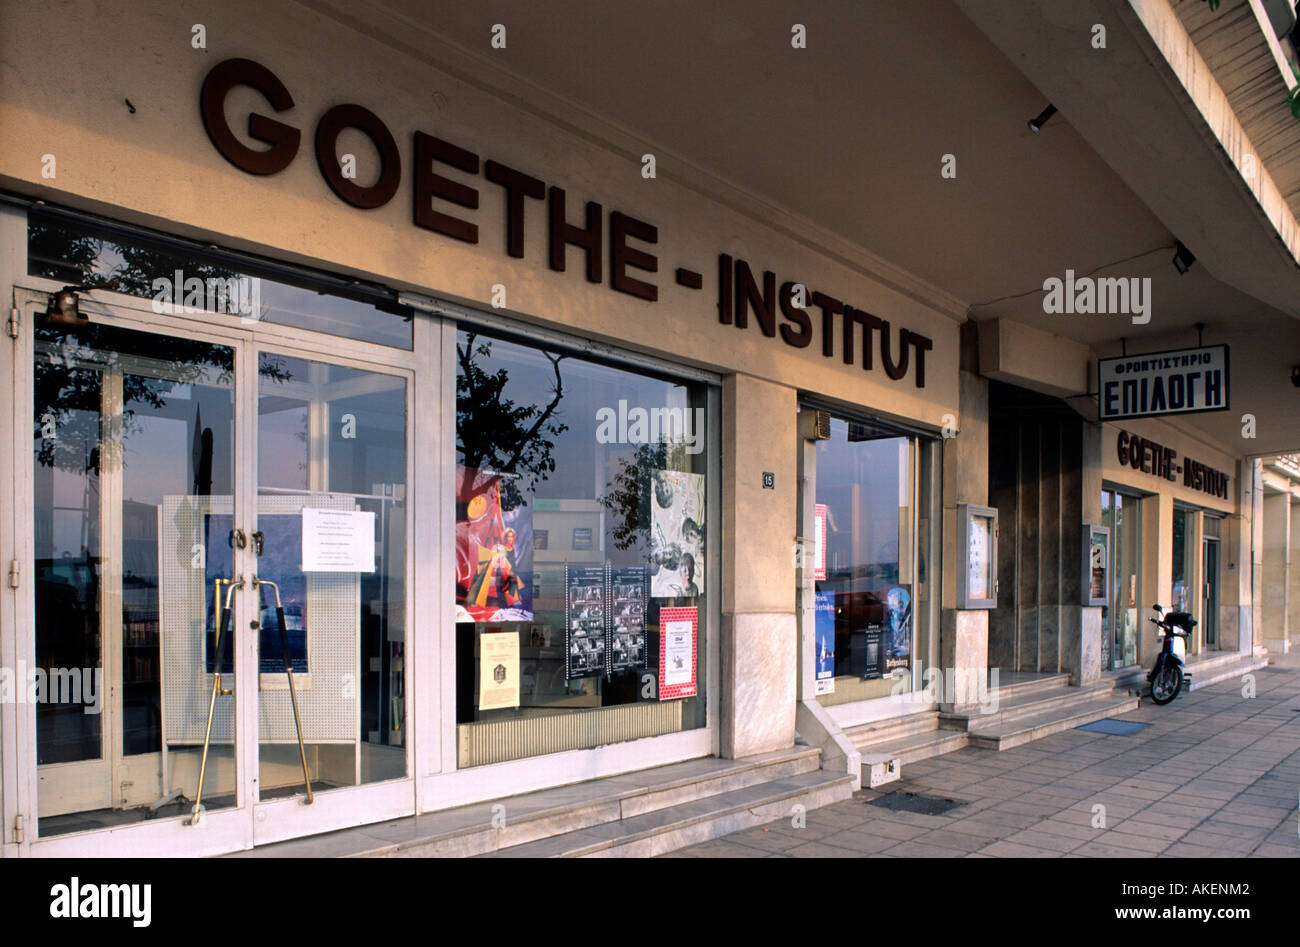 Europa, Griechenland, Thessaloniki, Goethe-Institut an der Uferstrasse Stock Photo